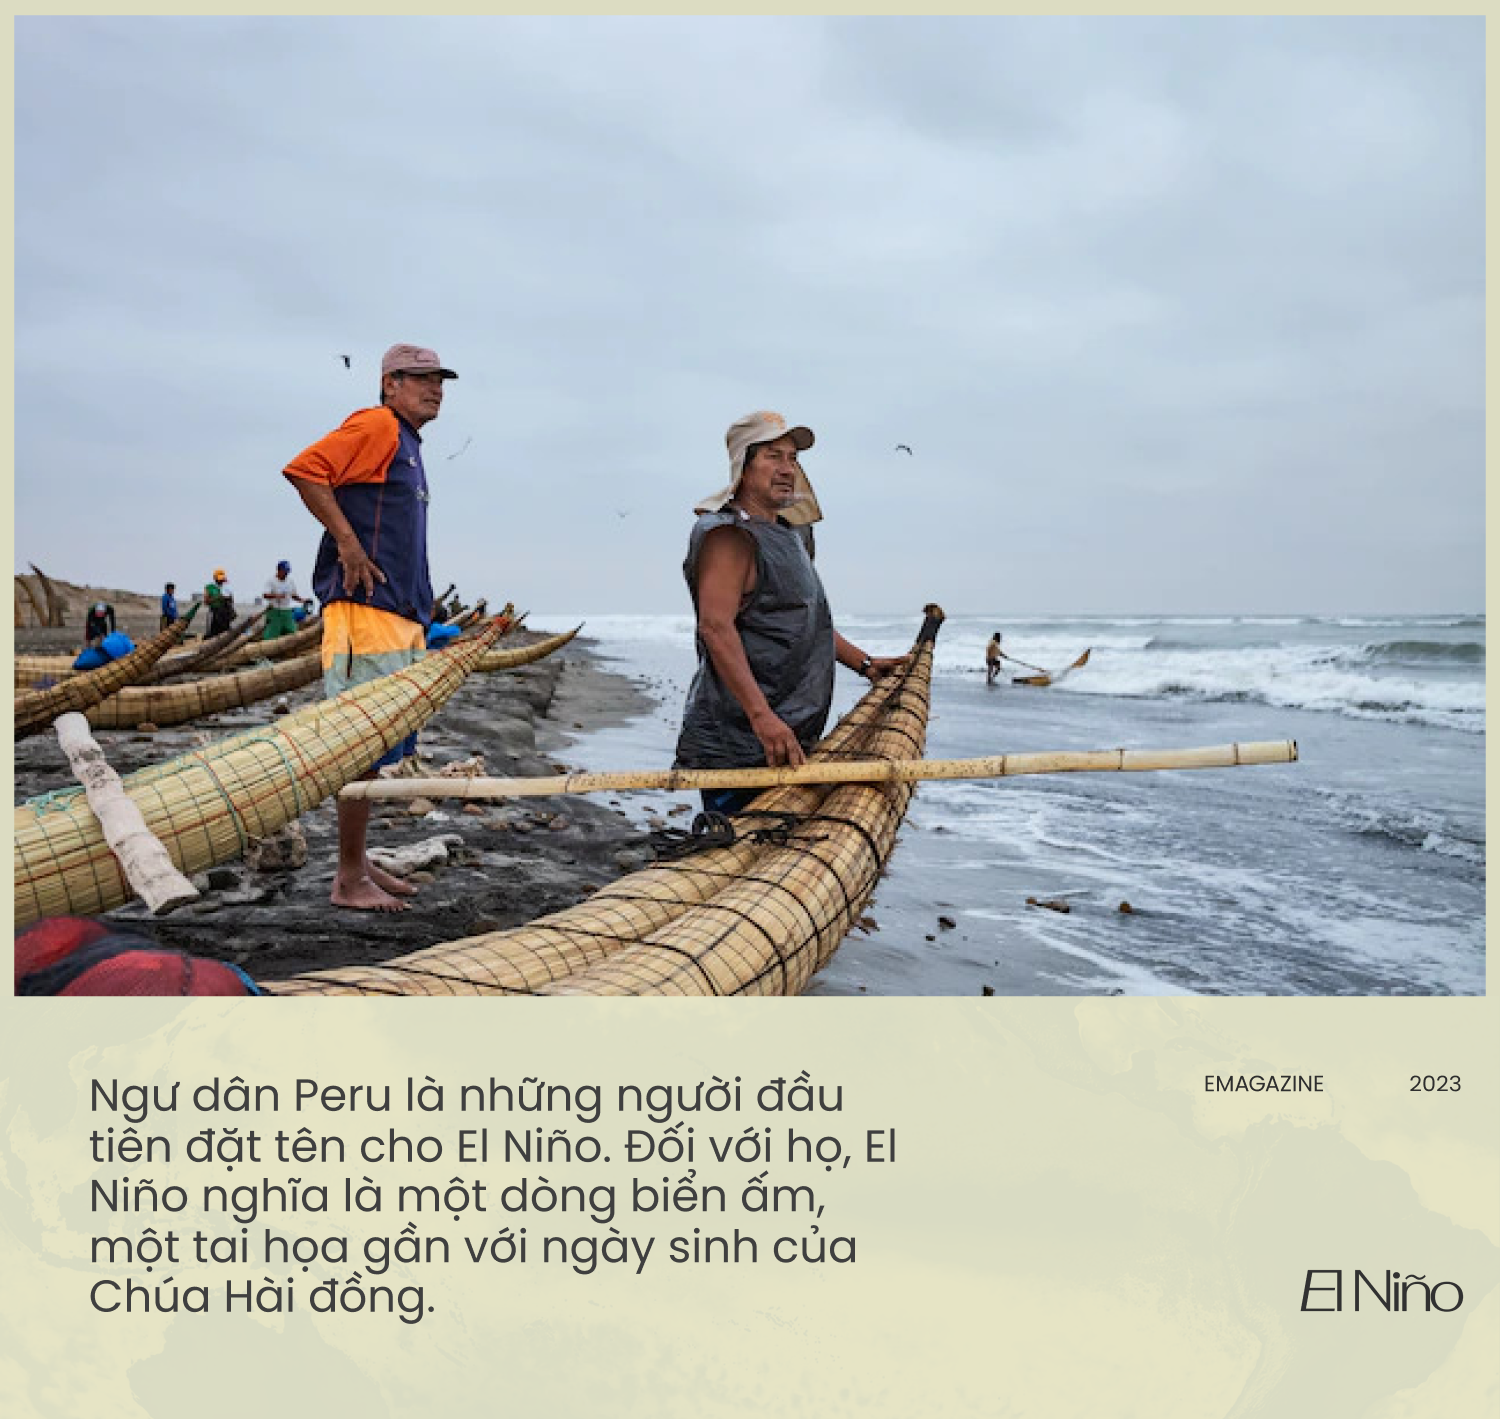 Những bí ẩn của El Niño: Nguồn gốc, lịch sử và hiệu ứng cánh bướm hai bên bờ Thái Bình Dương (kỳ 1) - Ảnh 7.